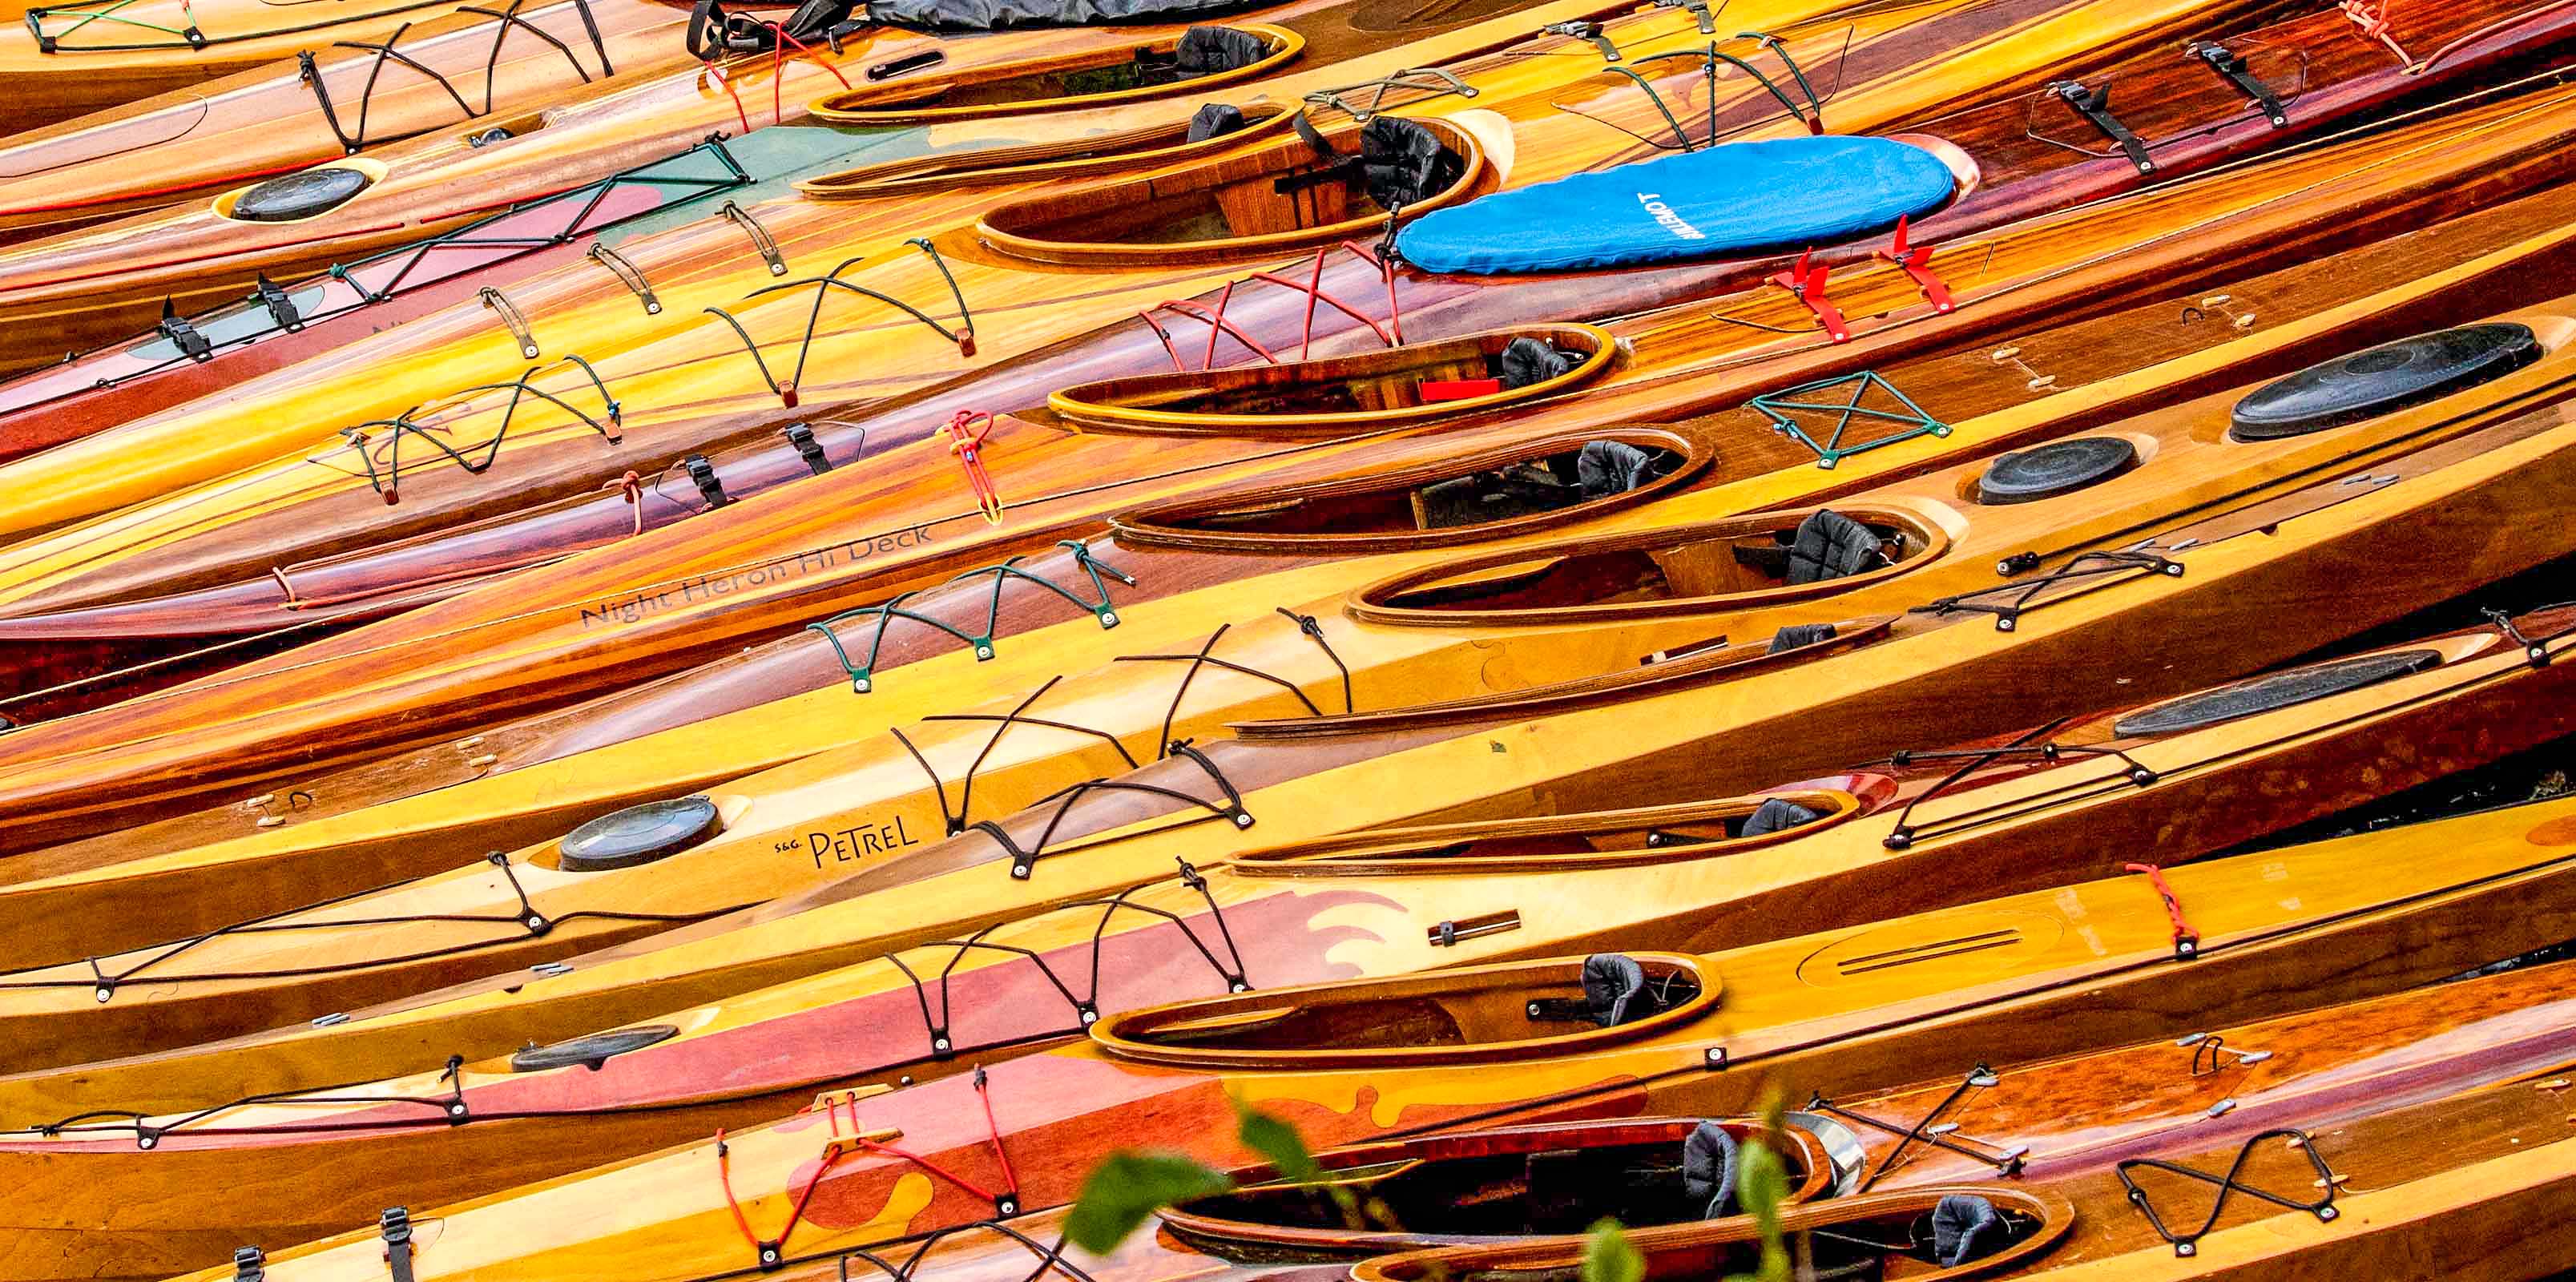 Wooden Kayaks on the Beach